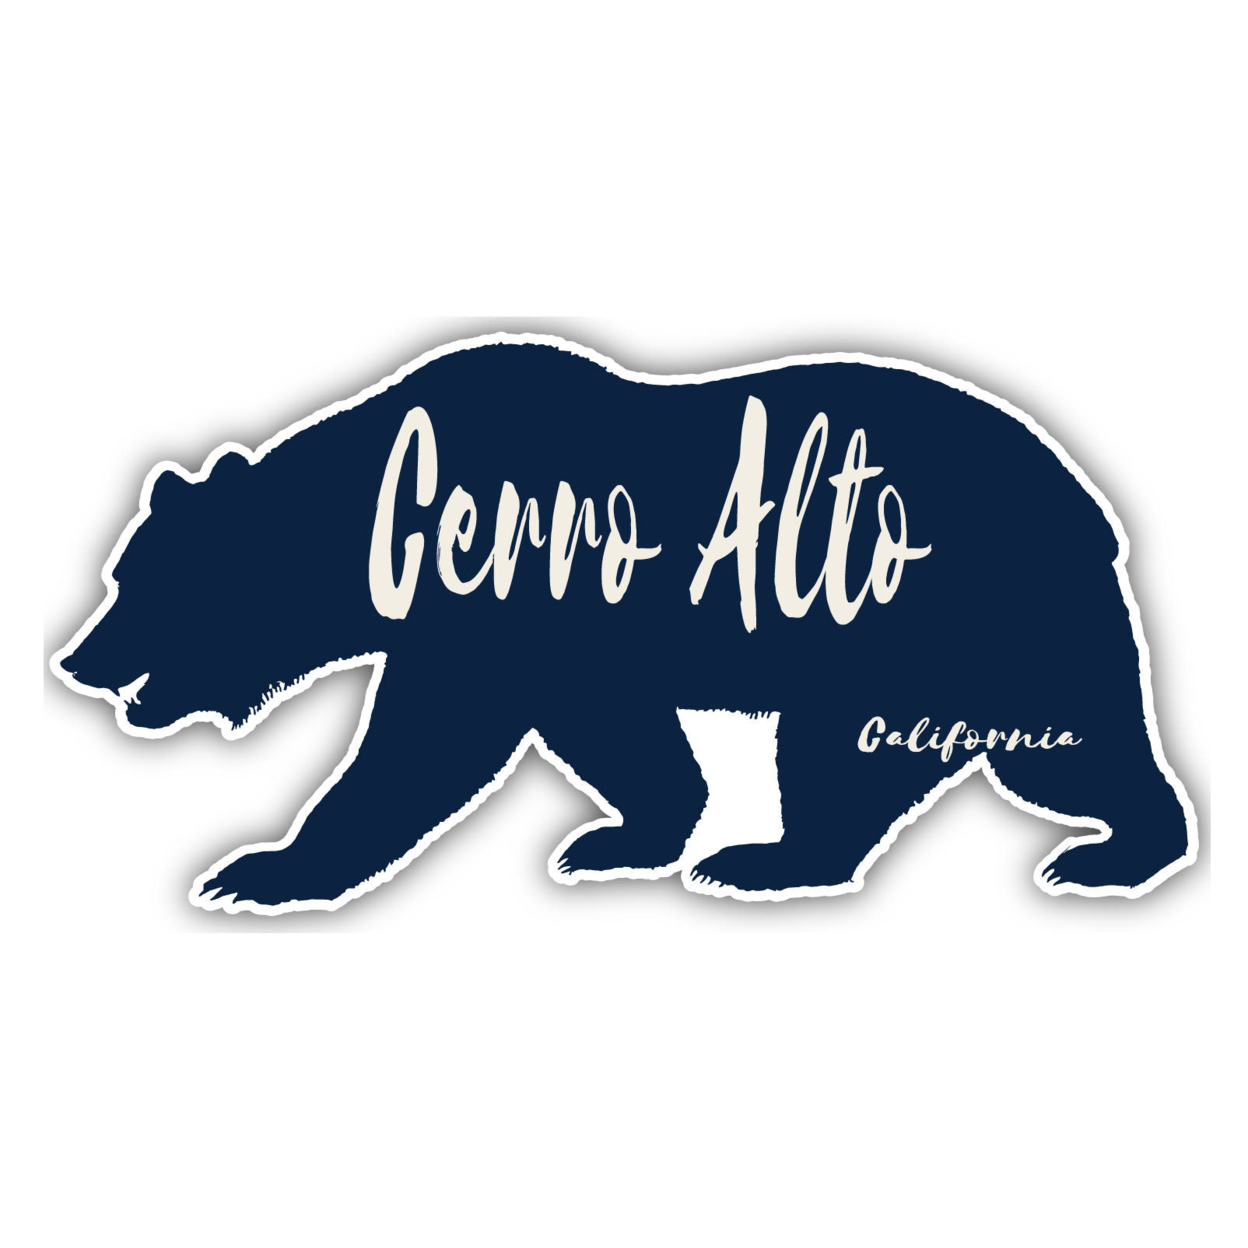 Cerro Alto California Souvenir Decorative Stickers (Choose Theme And Size) - Single Unit, 4-Inch, Bear